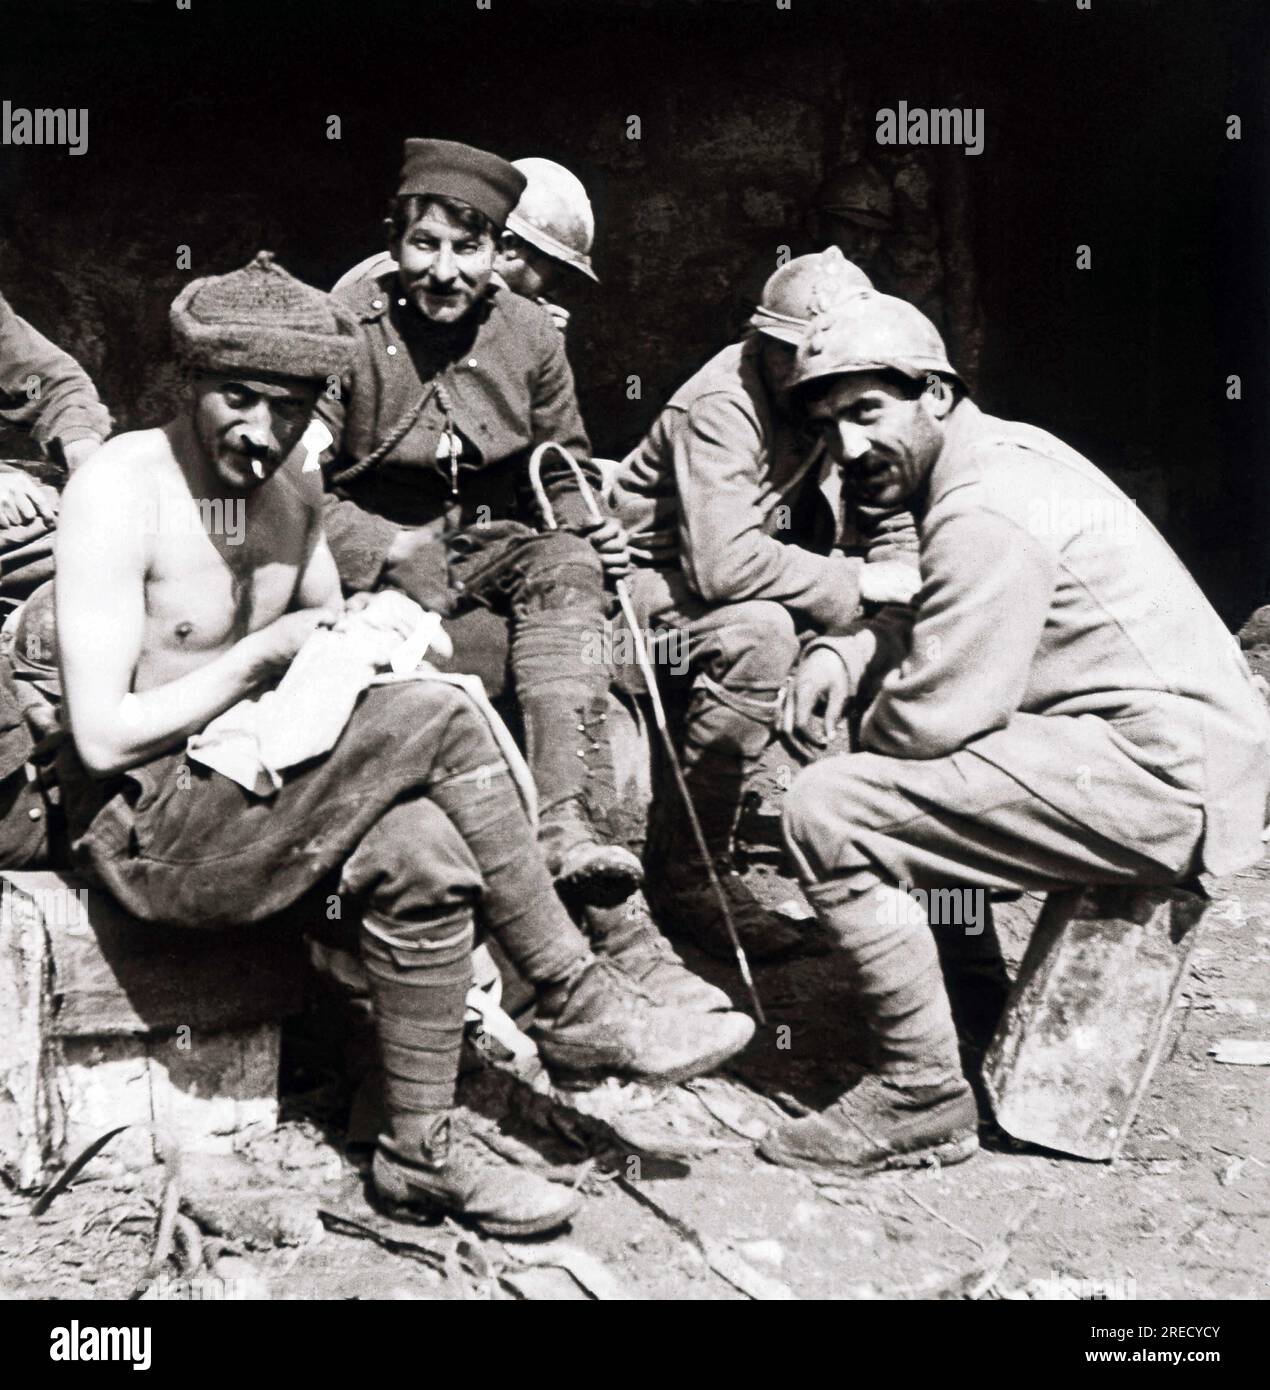 Le Première Guerre Mondiale, vie quotidienne des soldats francais, epouillage collectif. Photographie, 1914-1918, Paris. Banque D'Images